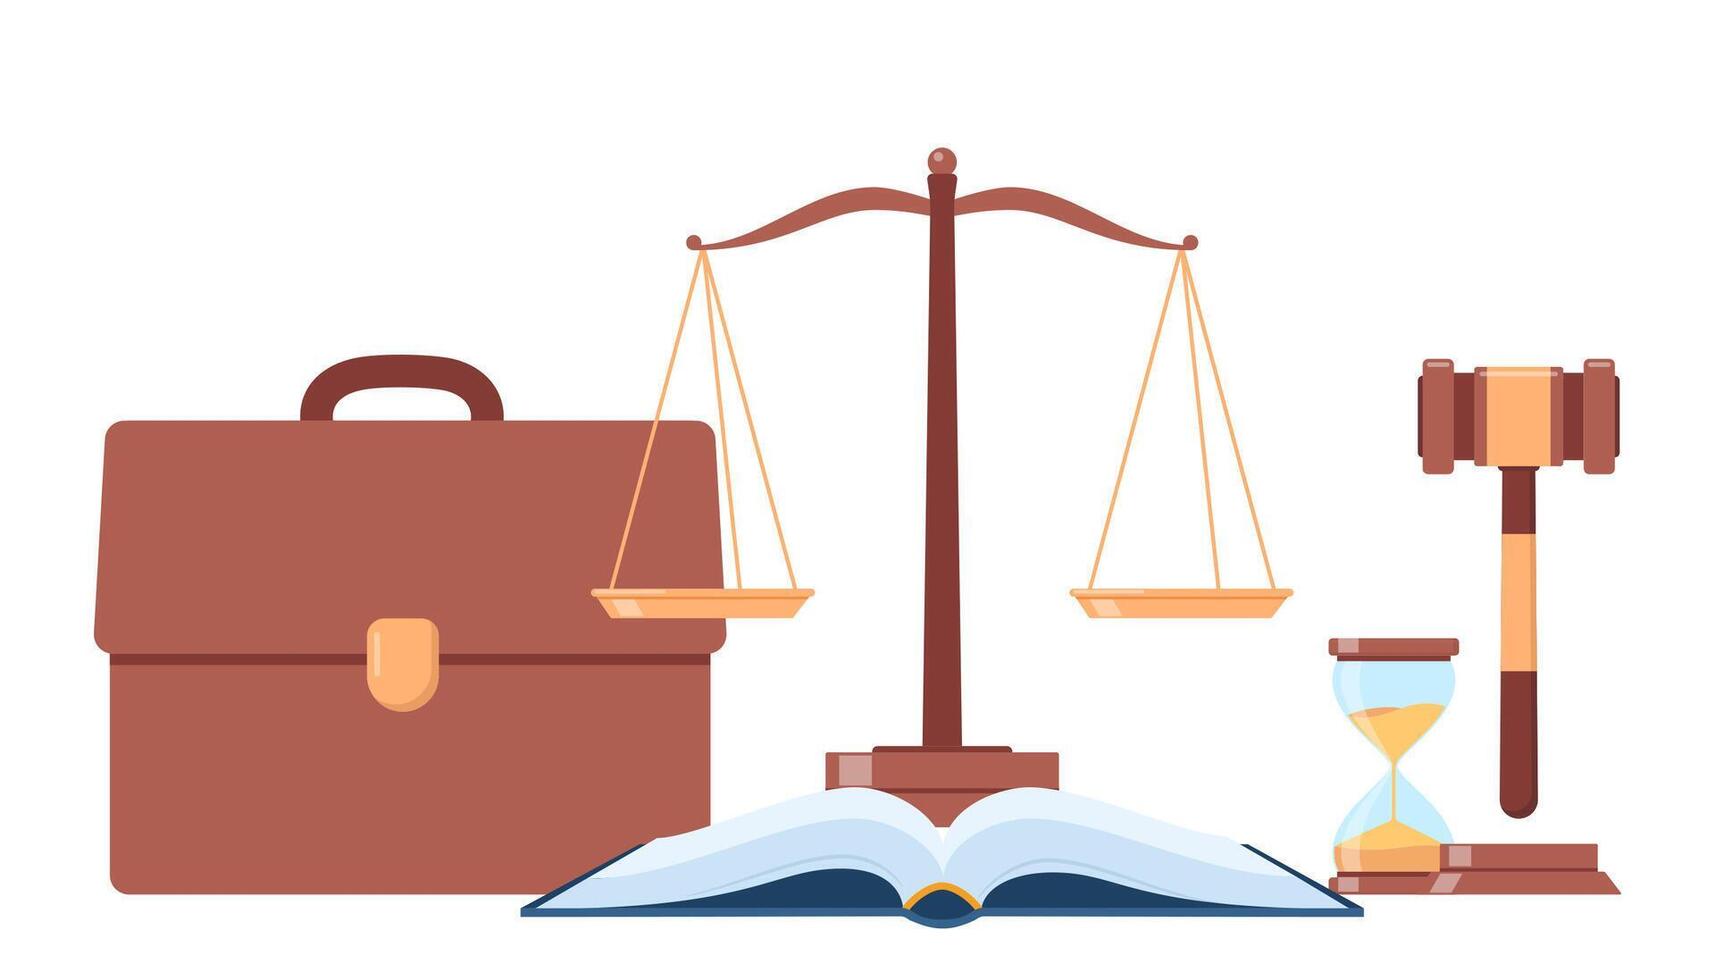 simboli di giustizia. legge prenotare, giudiziario martelletto, pesi di giustizia, tribunale, valigetta. vettore illustrazione.